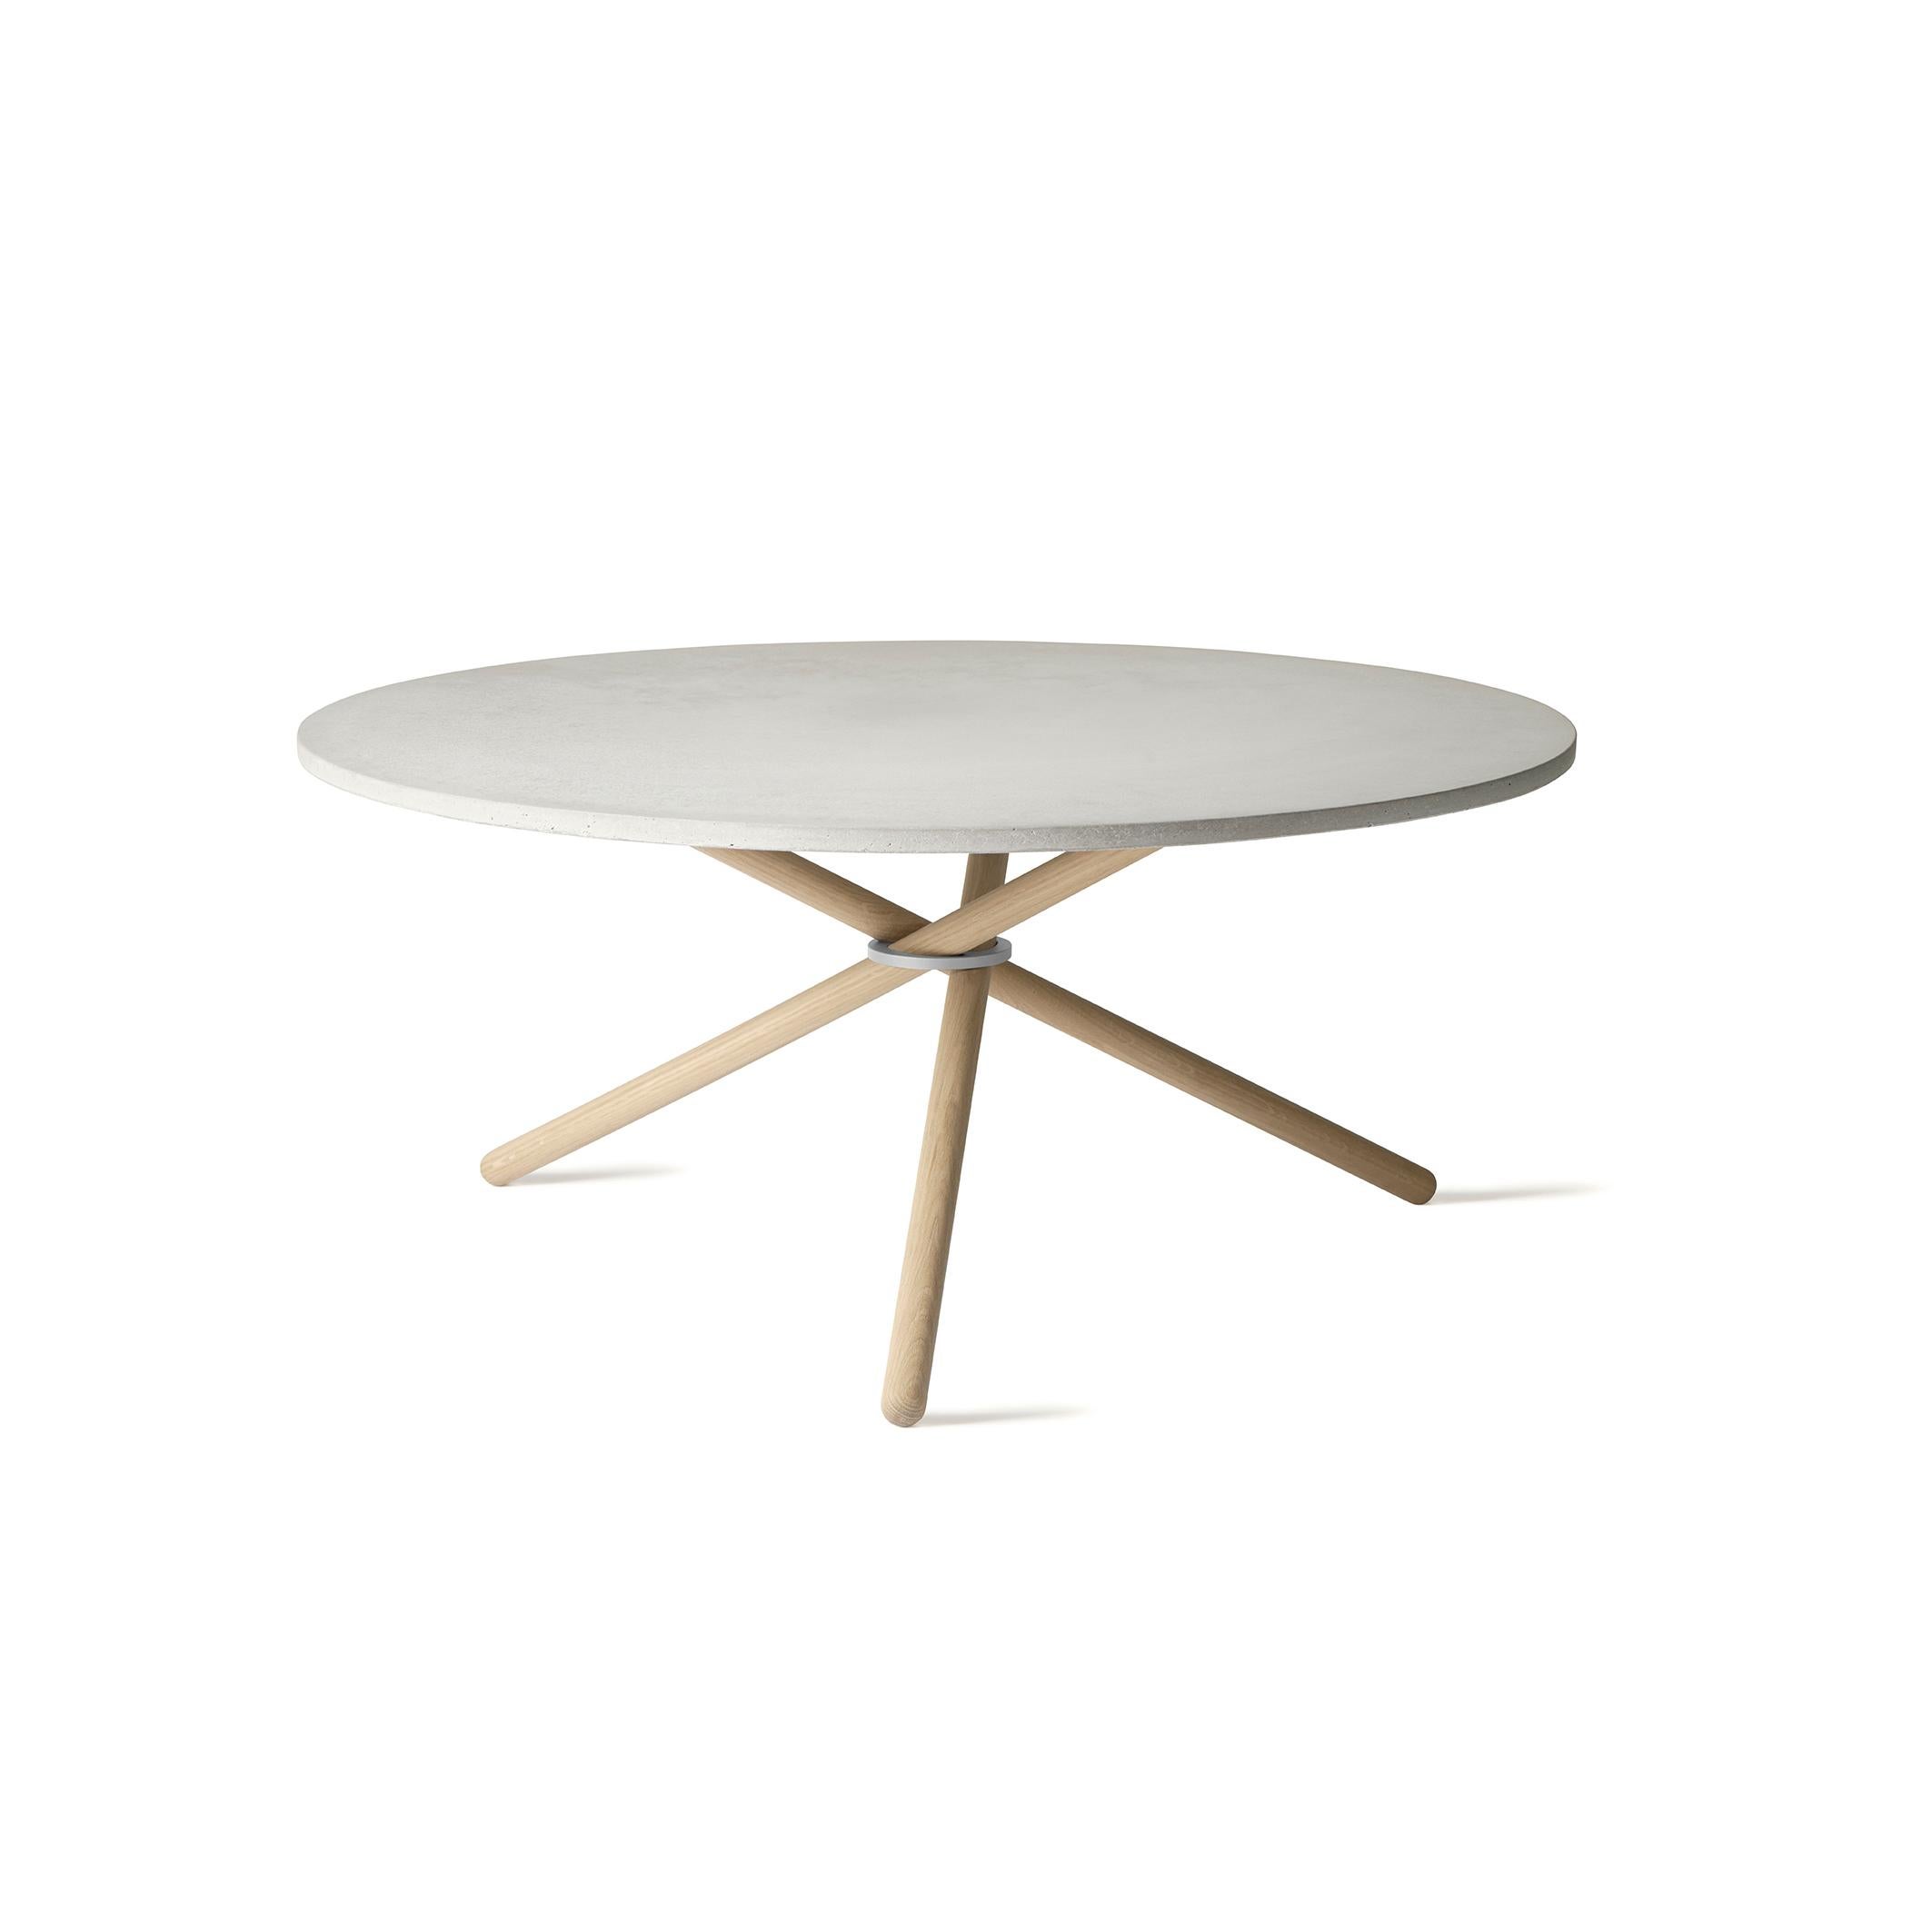 Edda ist ein geräumiger Couchtisch mit einem Durchmesser der Tischplatte von 105 cm. Der Tisch besteht aus drei Unterelementen: Der Montagering, die Holzbeine und die Tischplatte aus Beton, Eiche oder Birke. Die fast schwebende Tischplatte und die